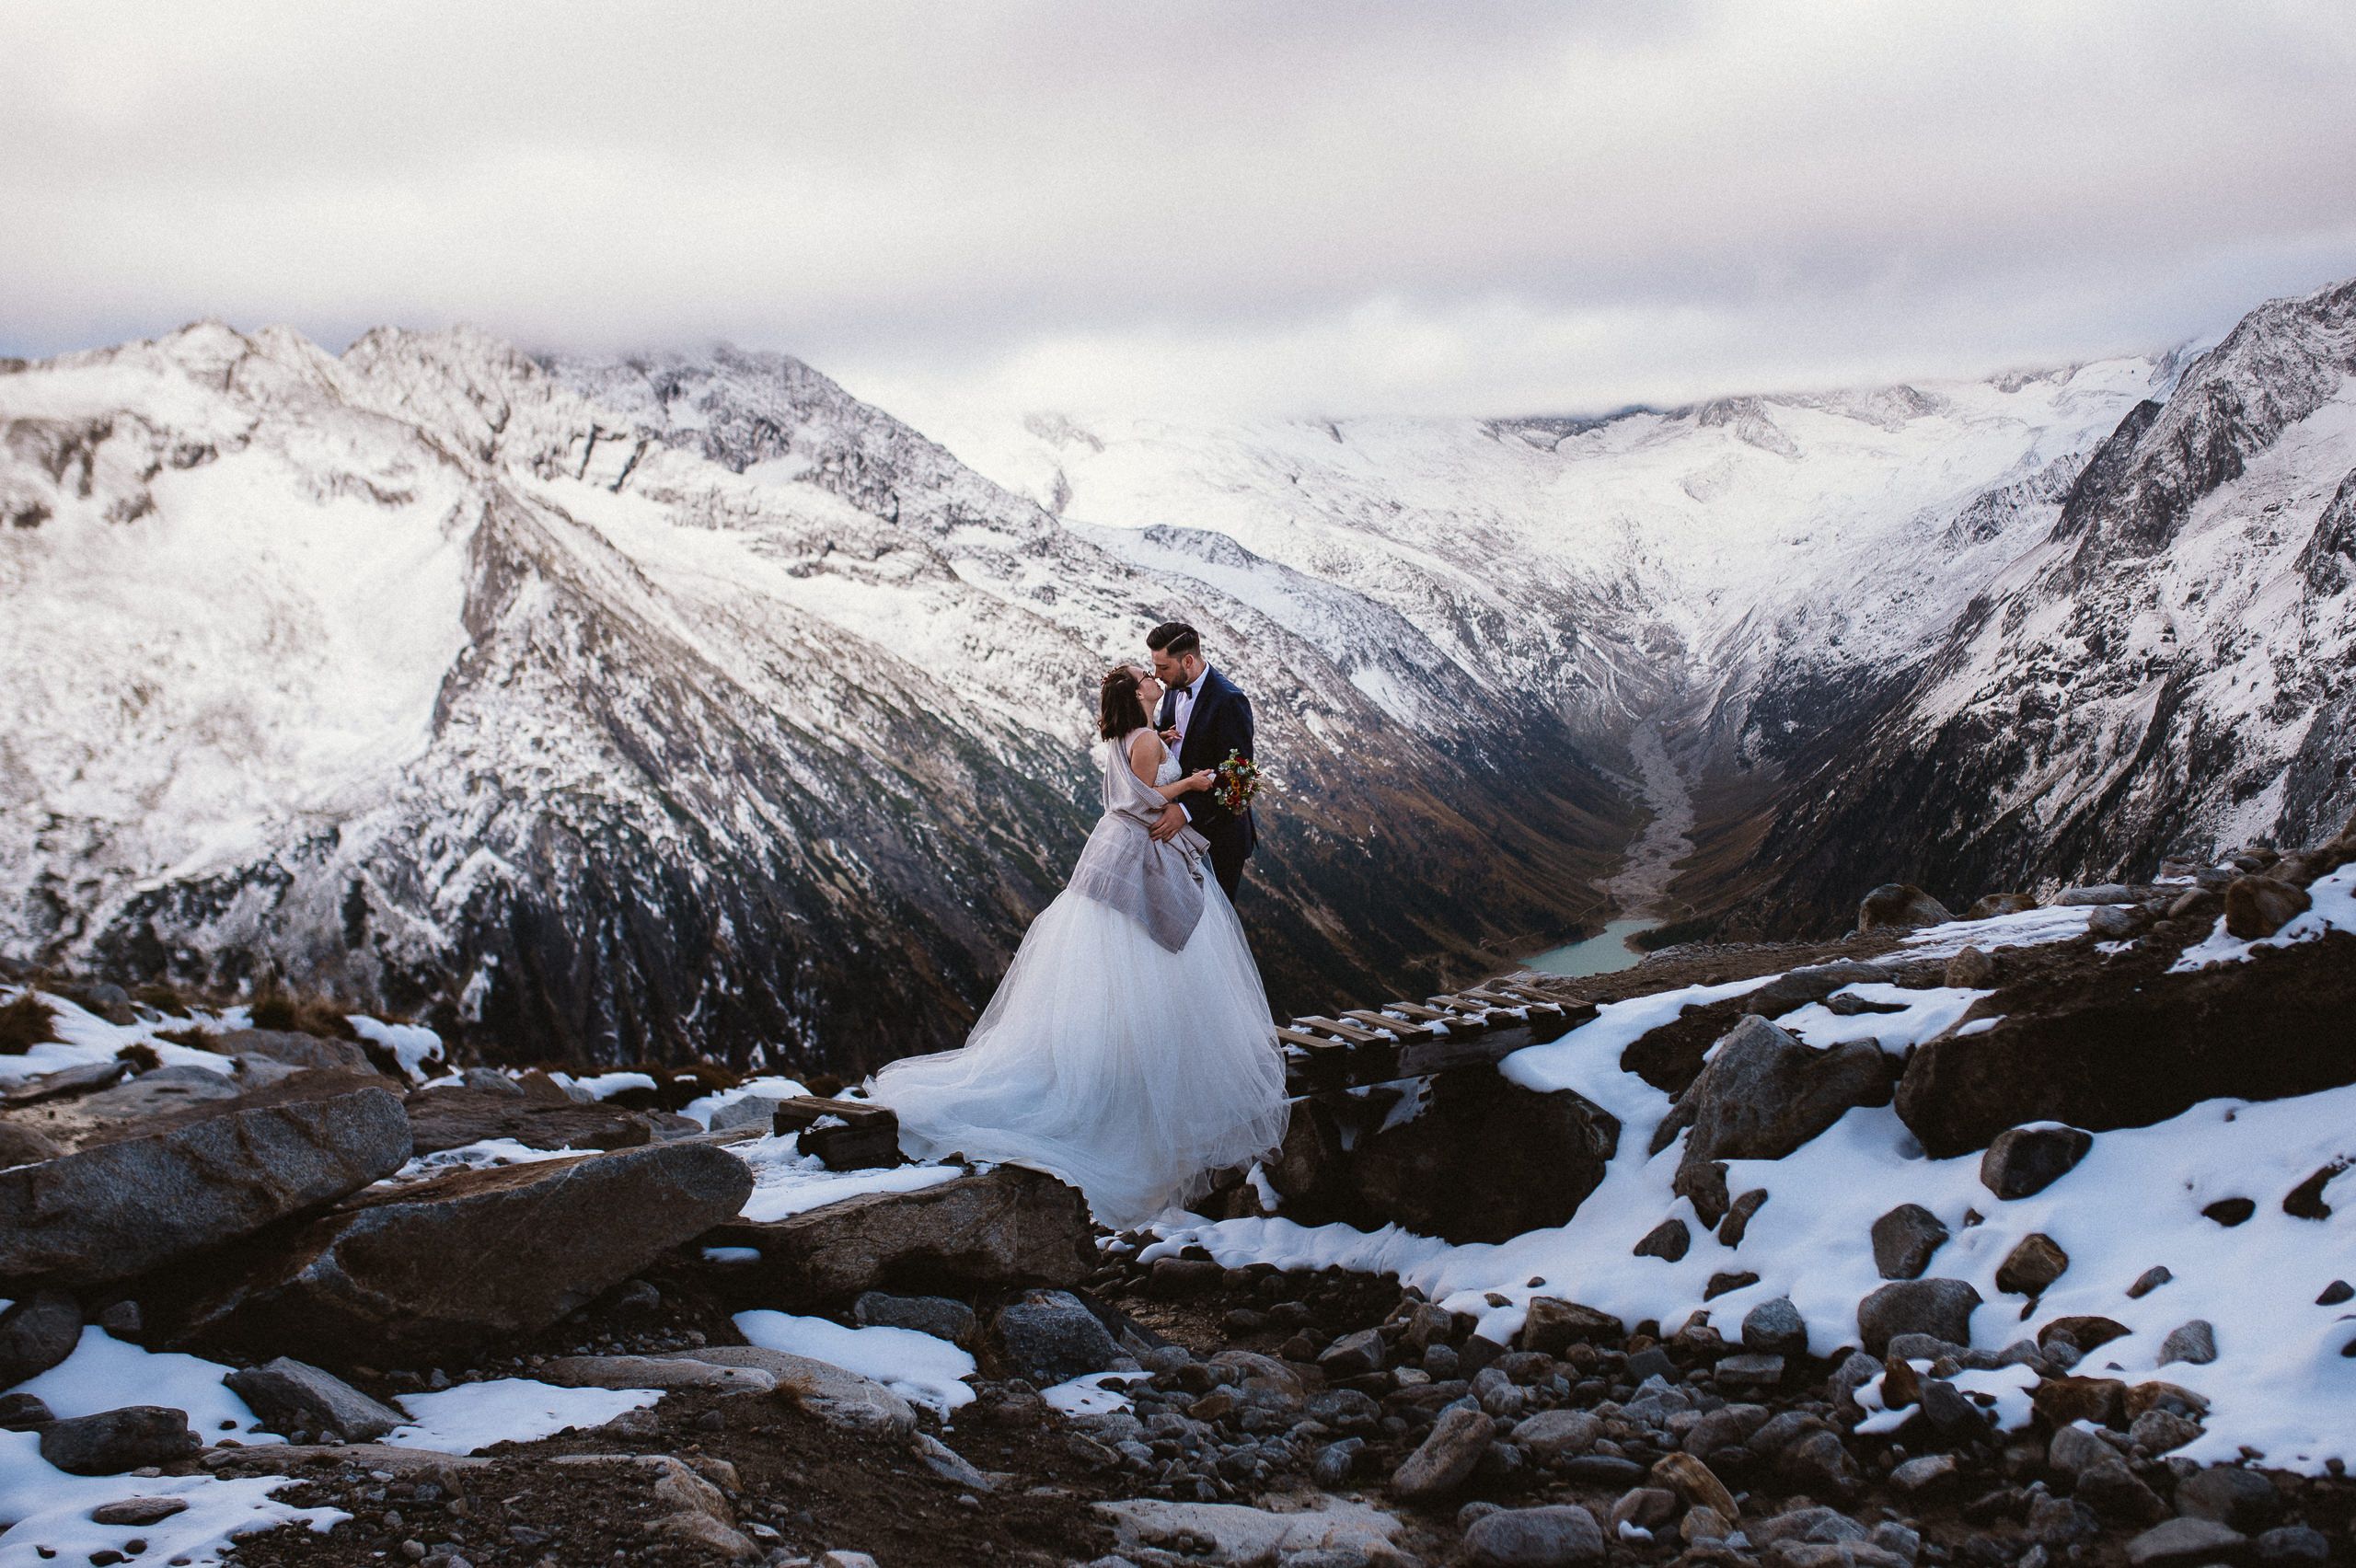 Brautpaar auf Hängebrücke vor Alpenpanorama, Adventure-Wedding in Tirol